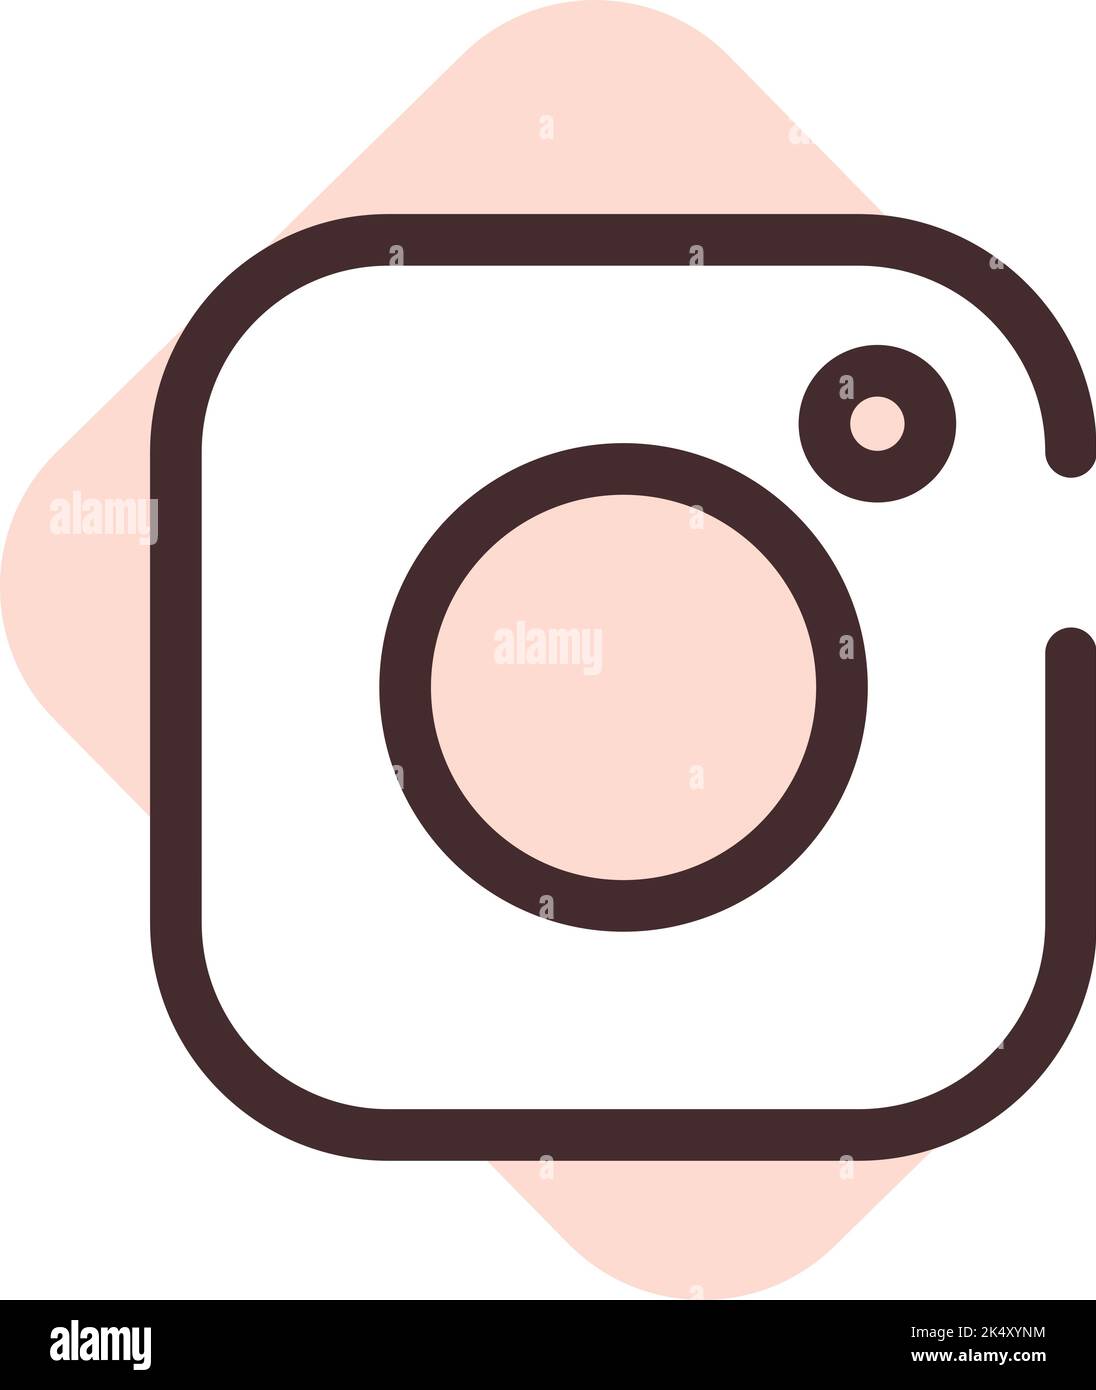 Gifs/Stickers para instagram stories 📸  Instagram story, Instagram story  ideas, Instagram highlight icons